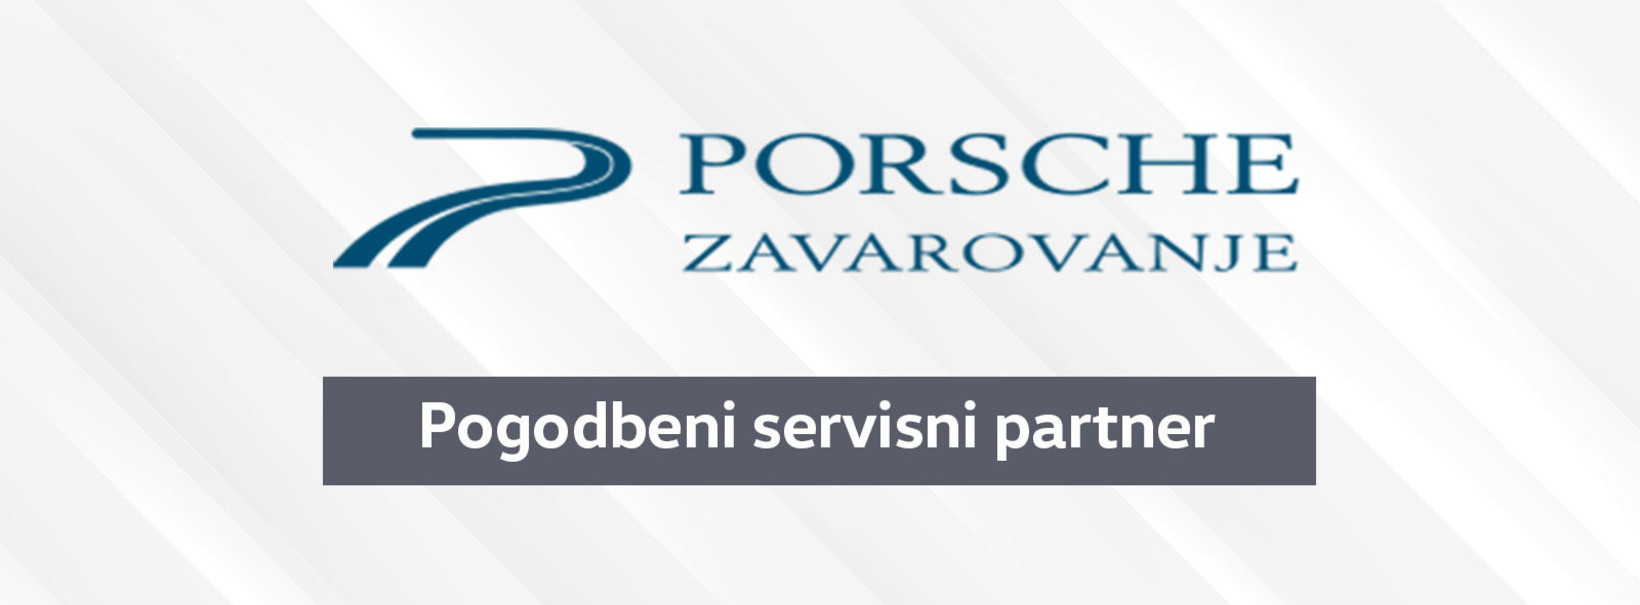 Porsche Zavarovanje - pogodbeni servisni partner